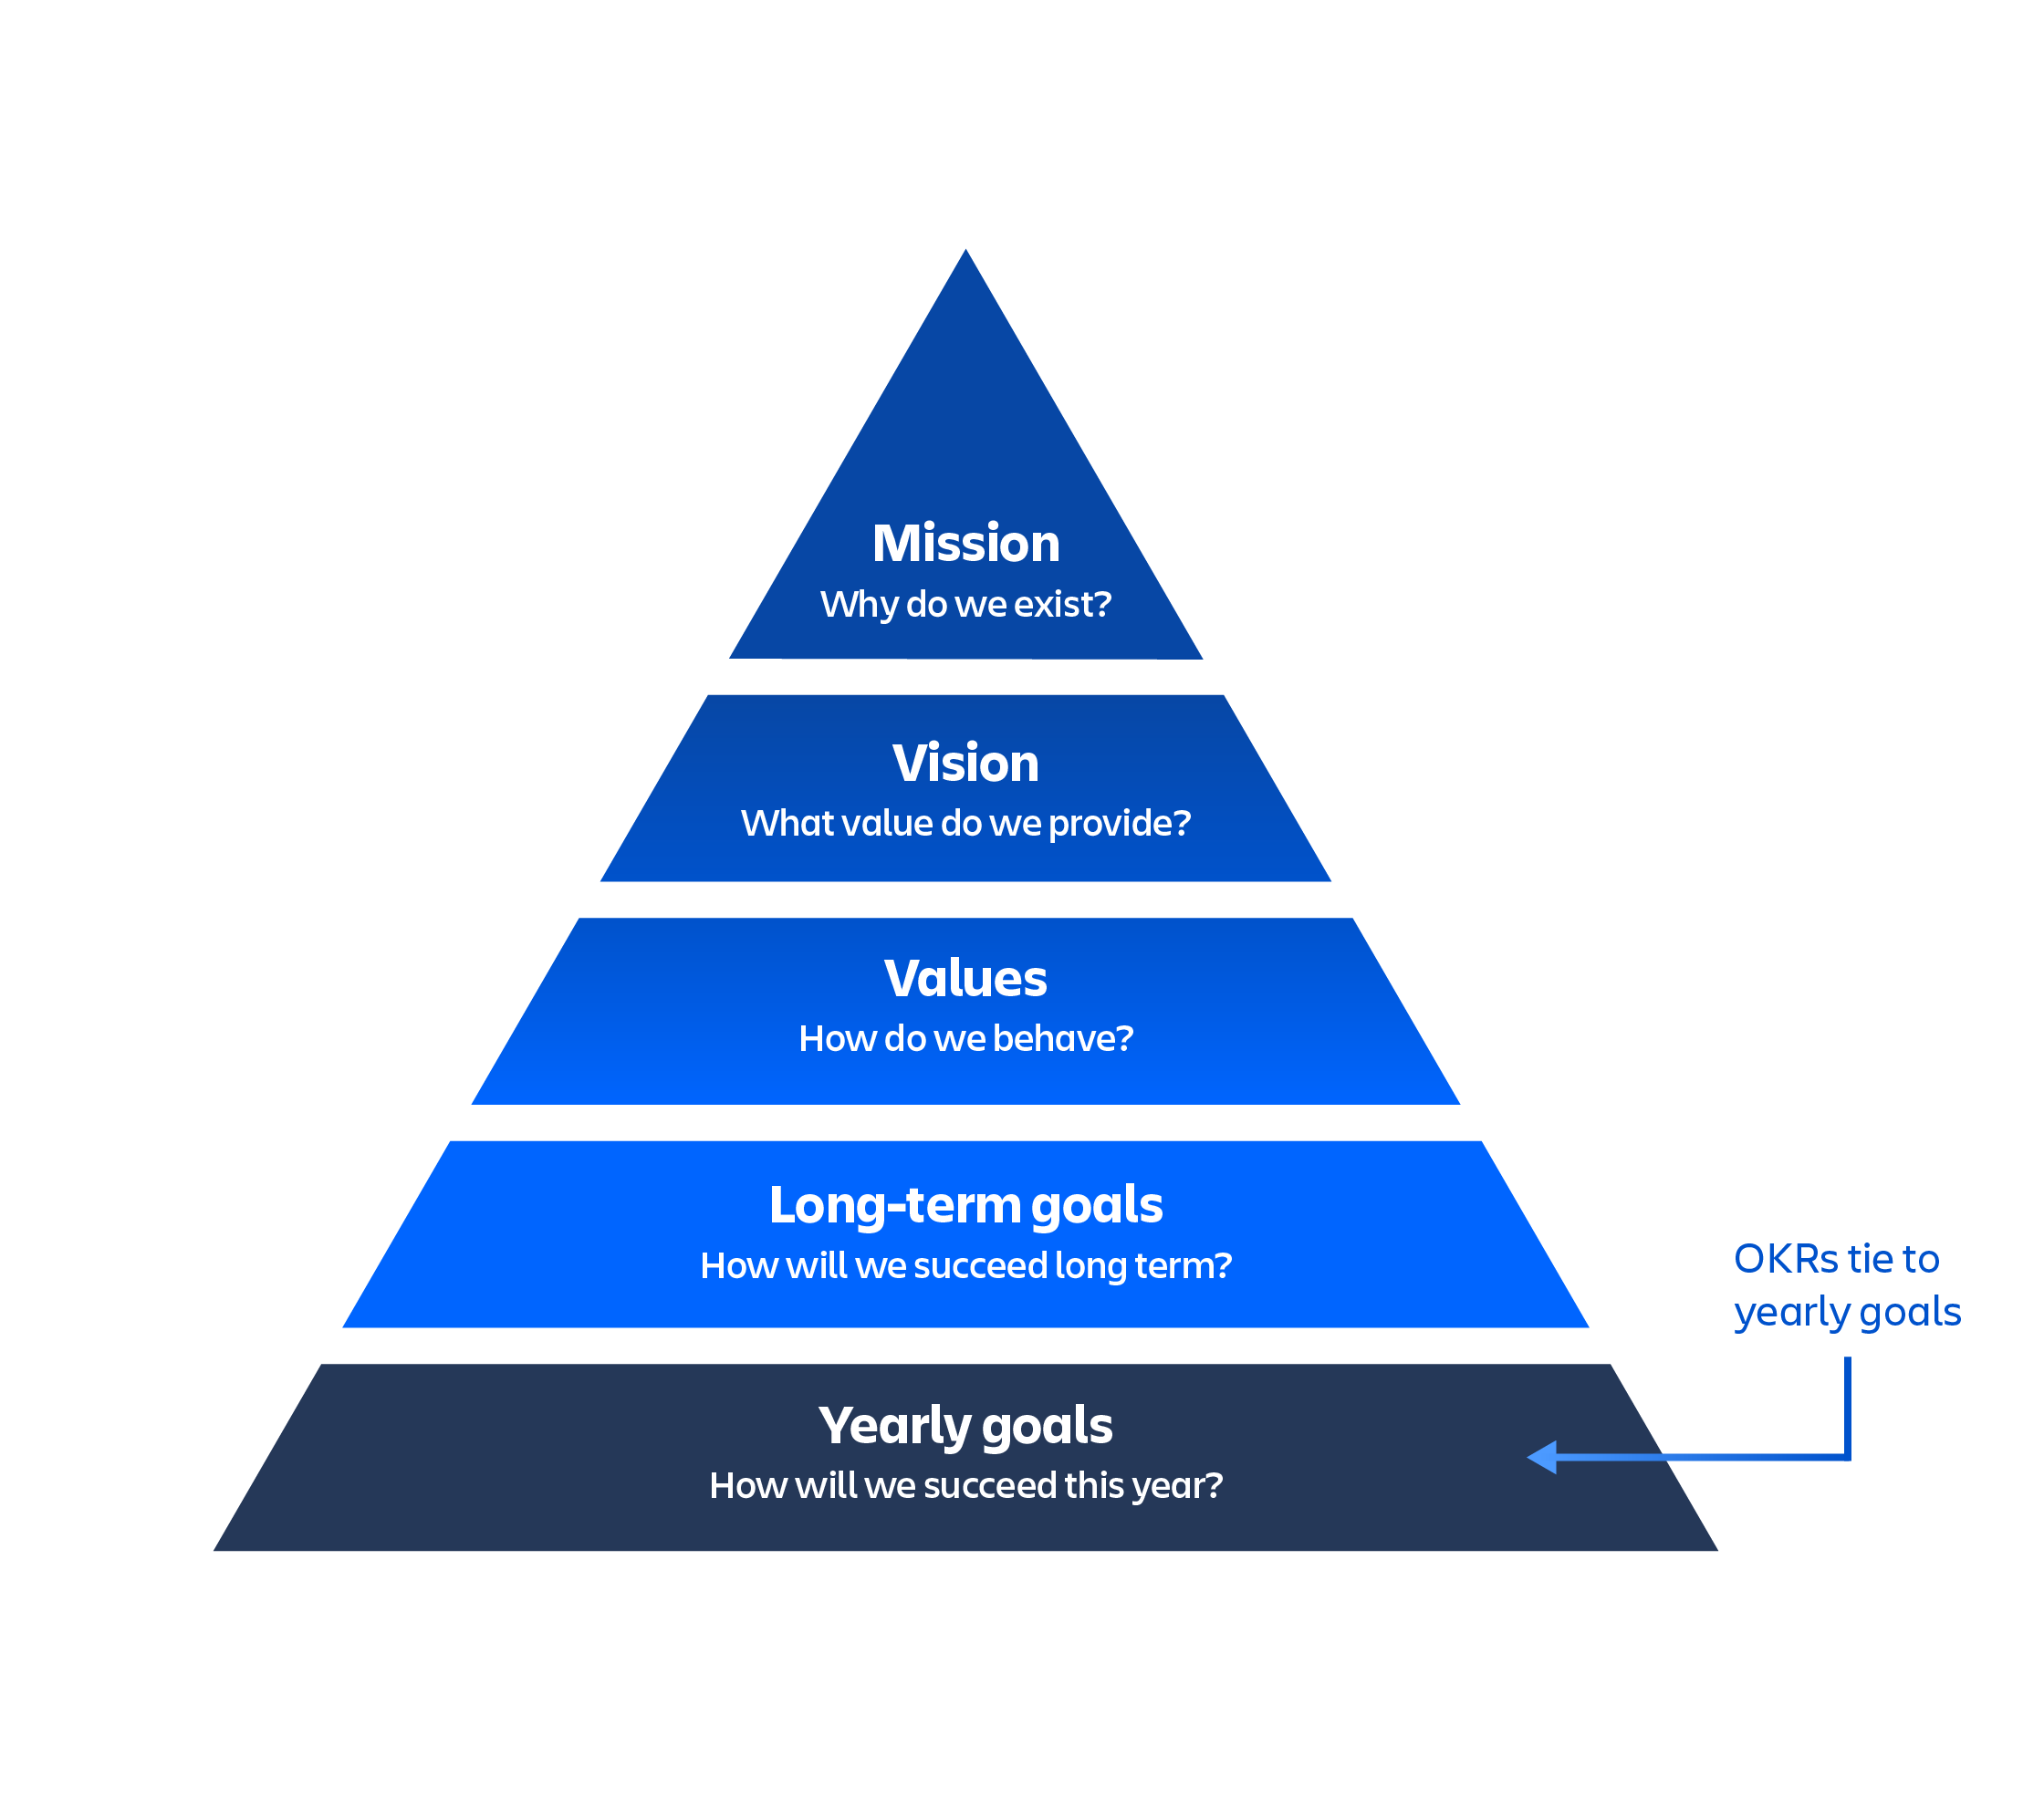 Piramide van OKR's met de jaarlijkse doelen onderaan